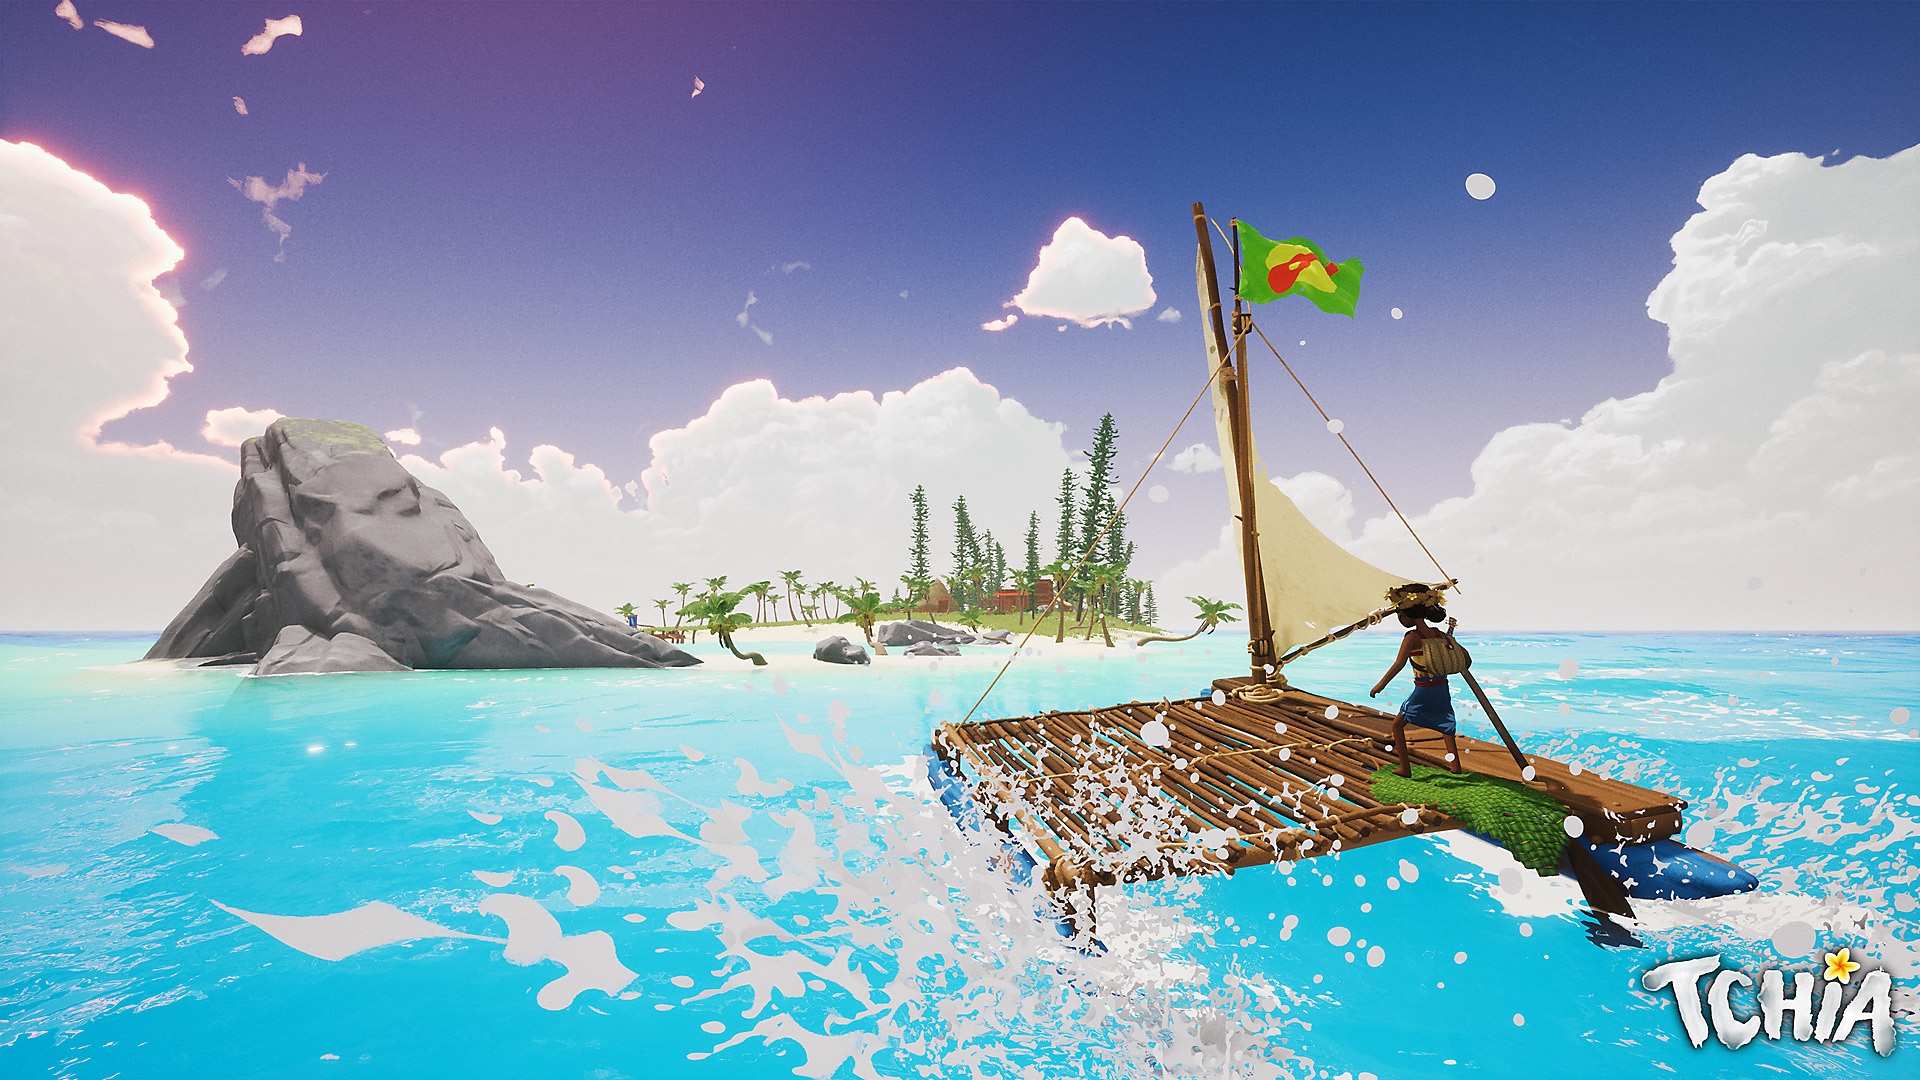 لقطة شاشة لـ Tchia تظهر فيها الشخصية الرئيسية وهي تبحر على قارب باتجاه جزيرة